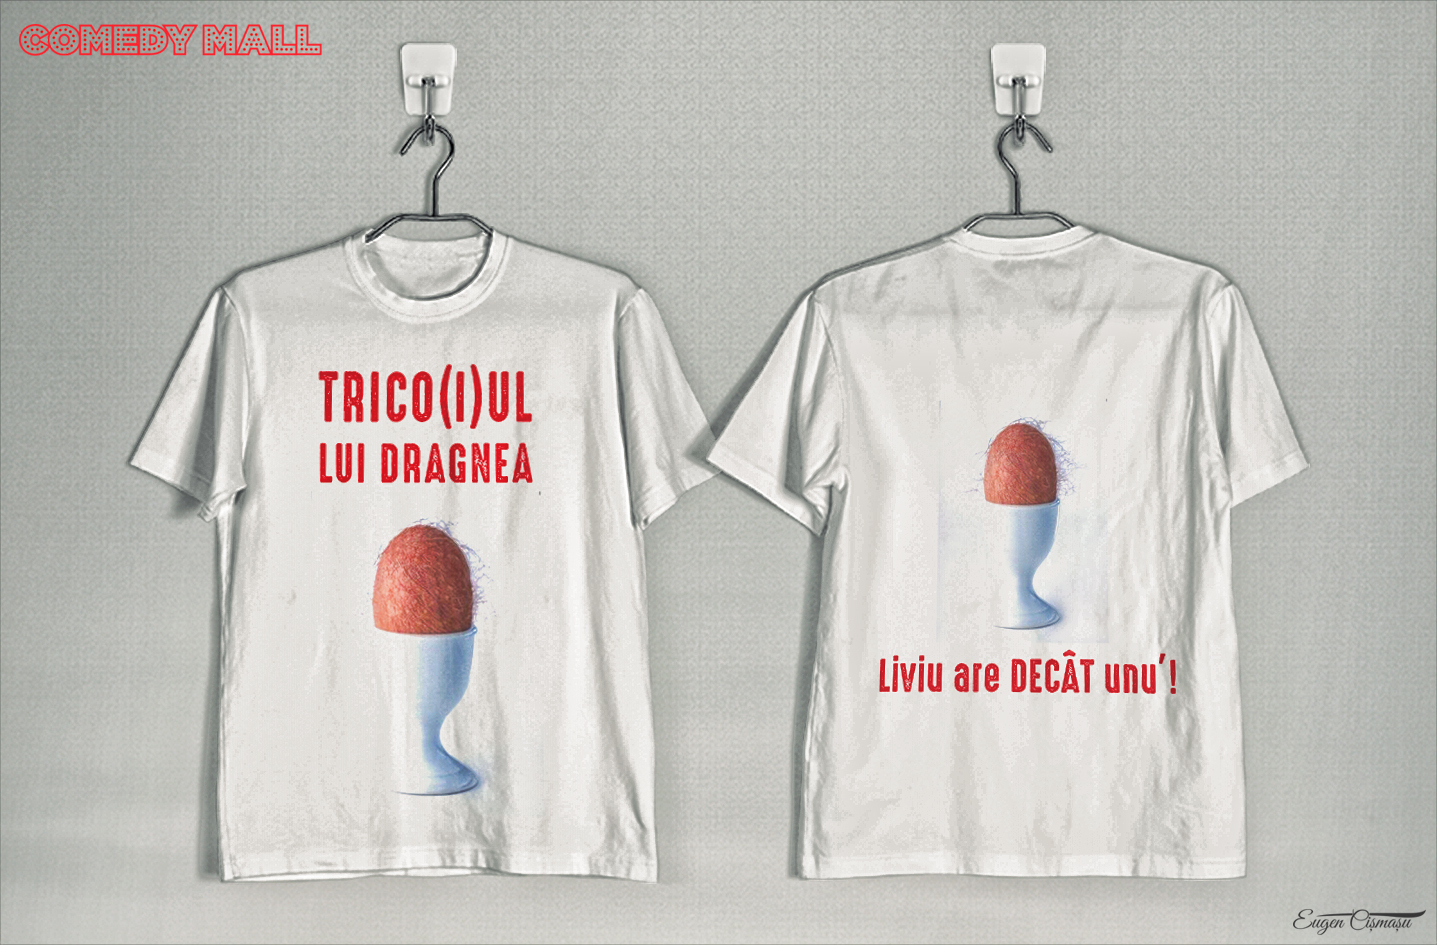 A fost lansat ”Trico(i)ul lui Dragnea” pentru manifestaţia din 10 august, din Piaţa Victoriei